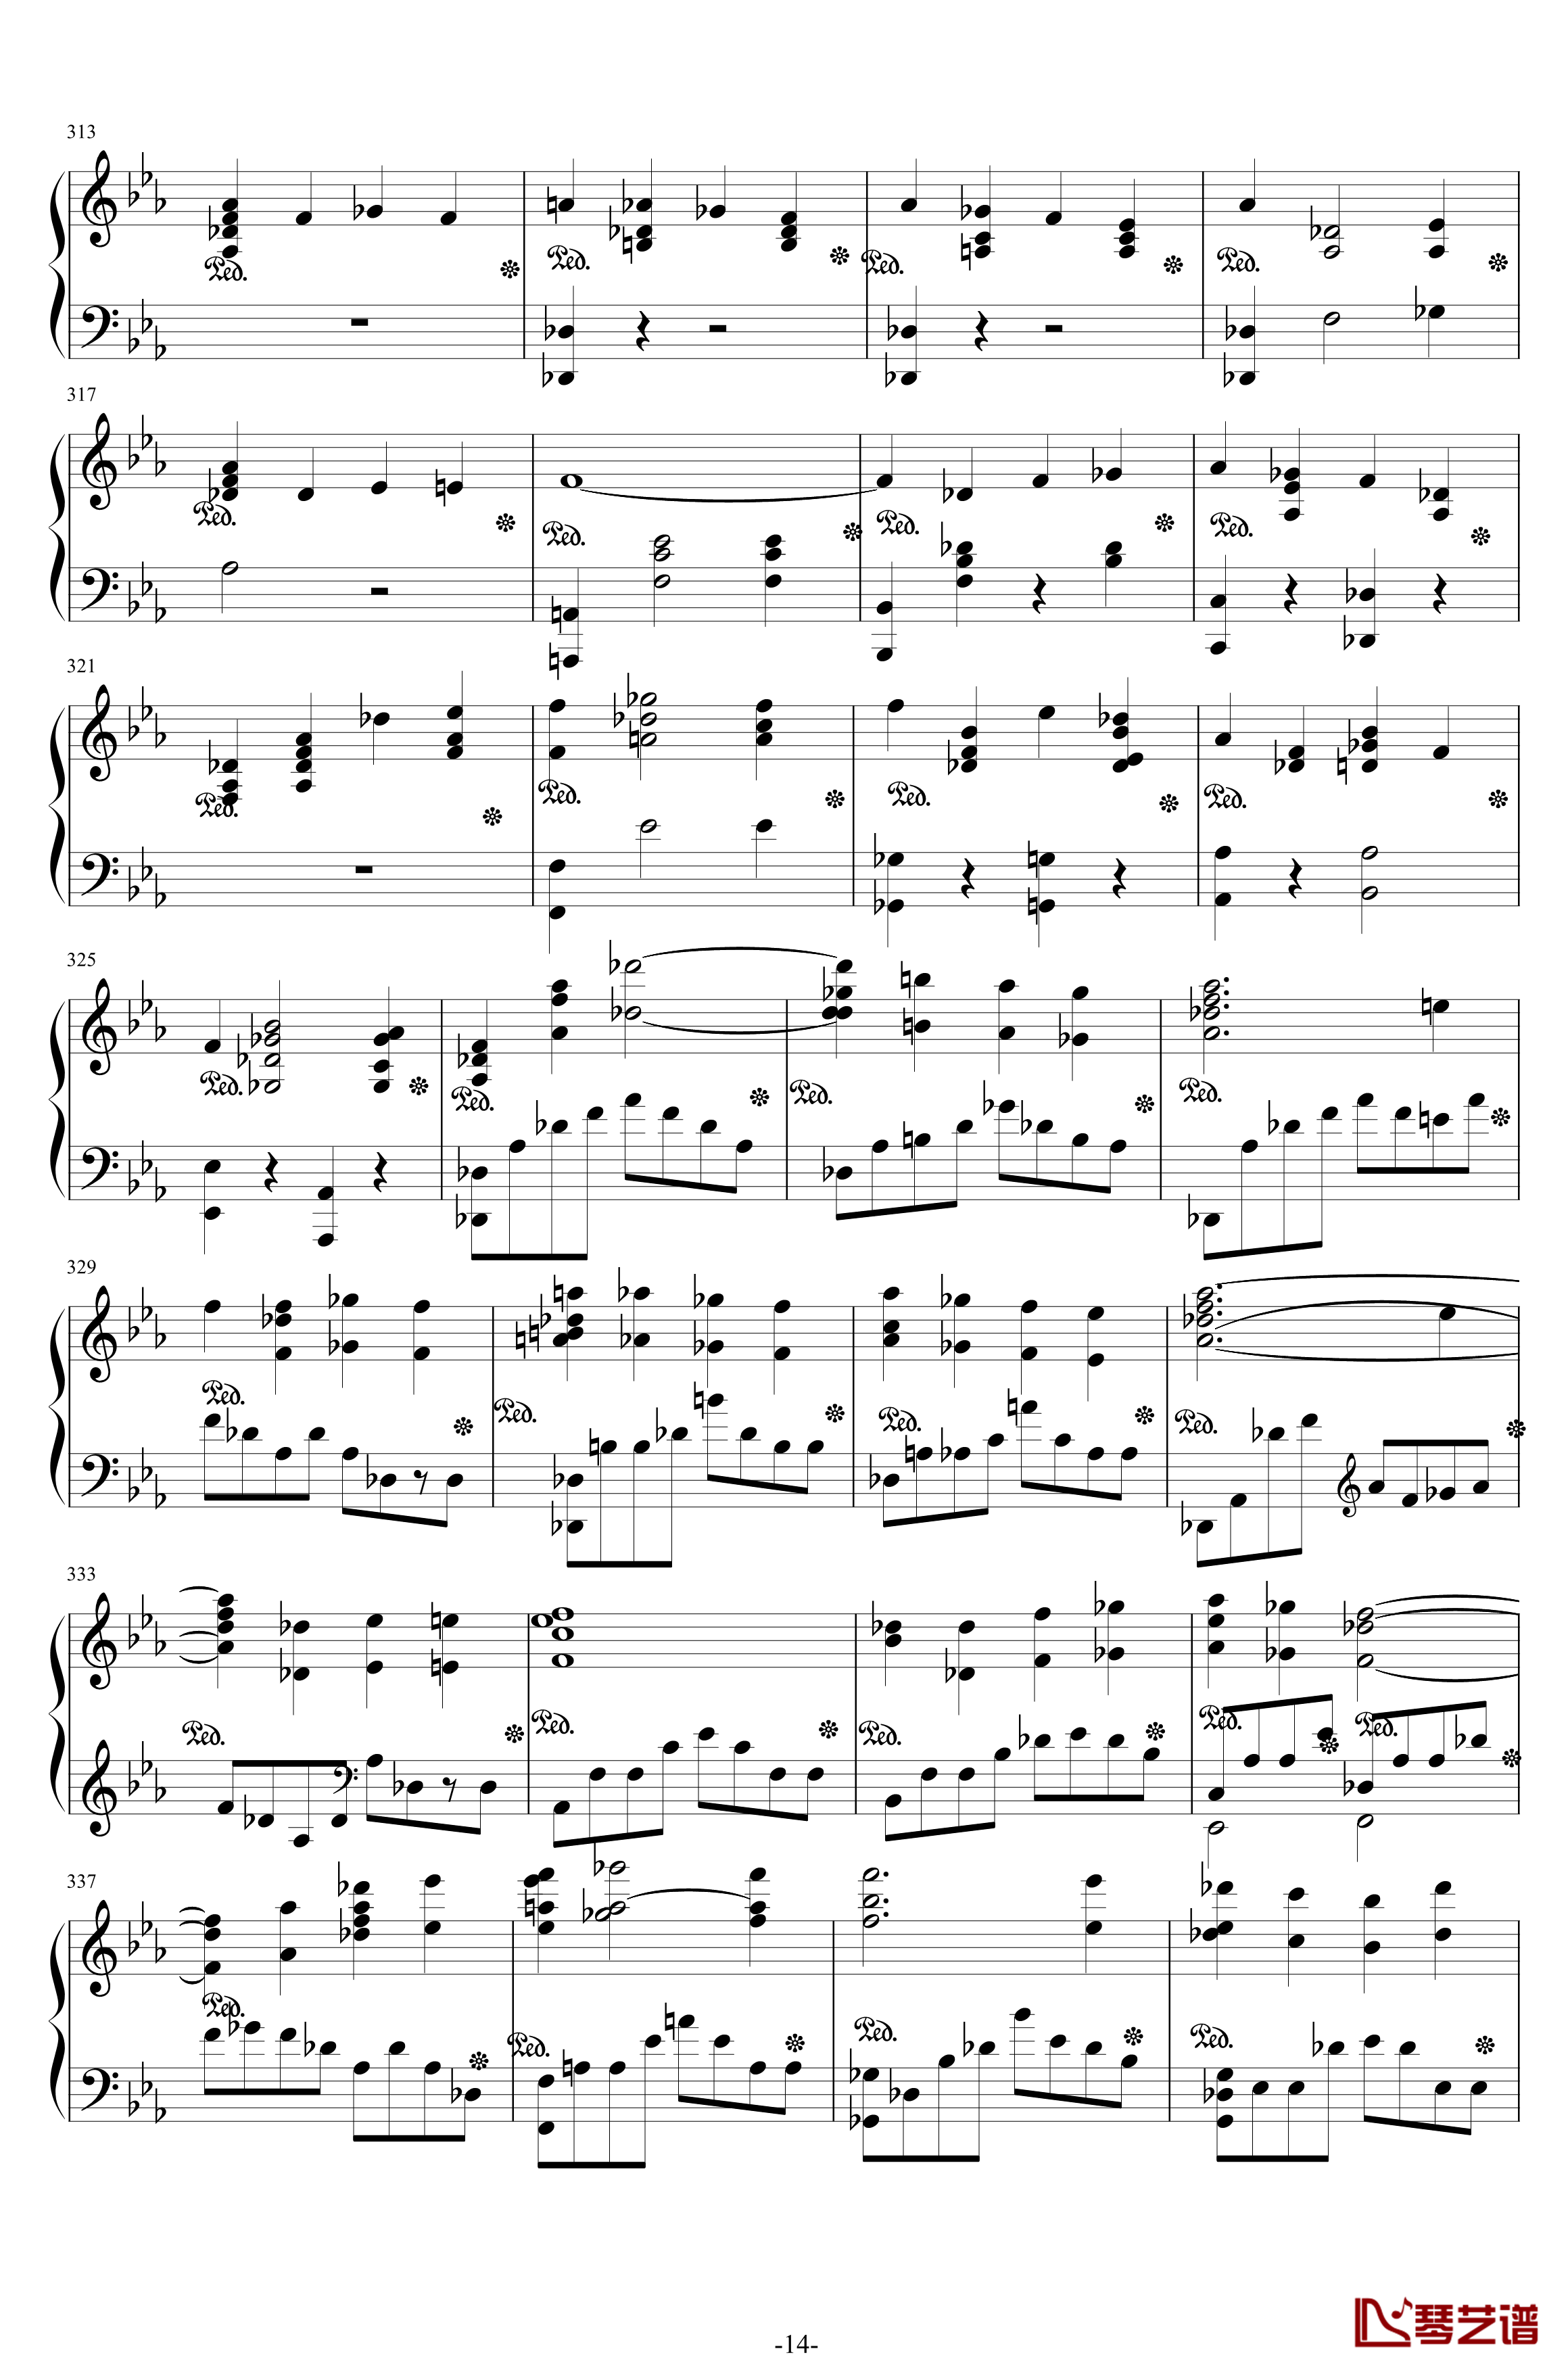 第二钢琴协奏曲钢琴谱-第三乐章独奏版-c小调-拉赫马尼若夫14